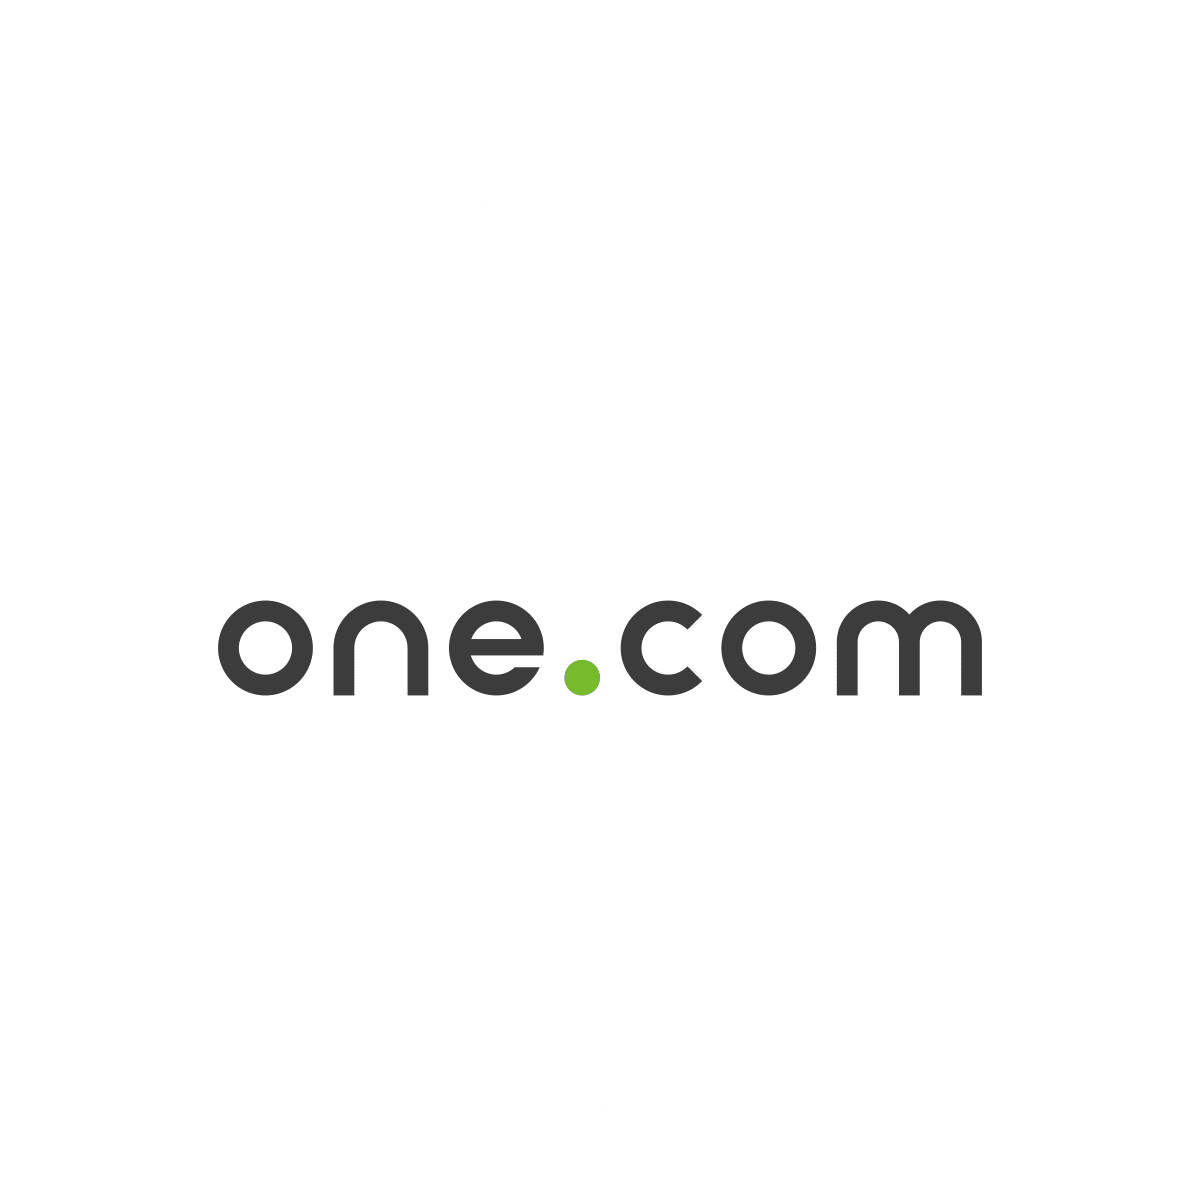 one.com er nå en cookie information partner - få ditt cookiebanner gratis om du bruker Website Builder